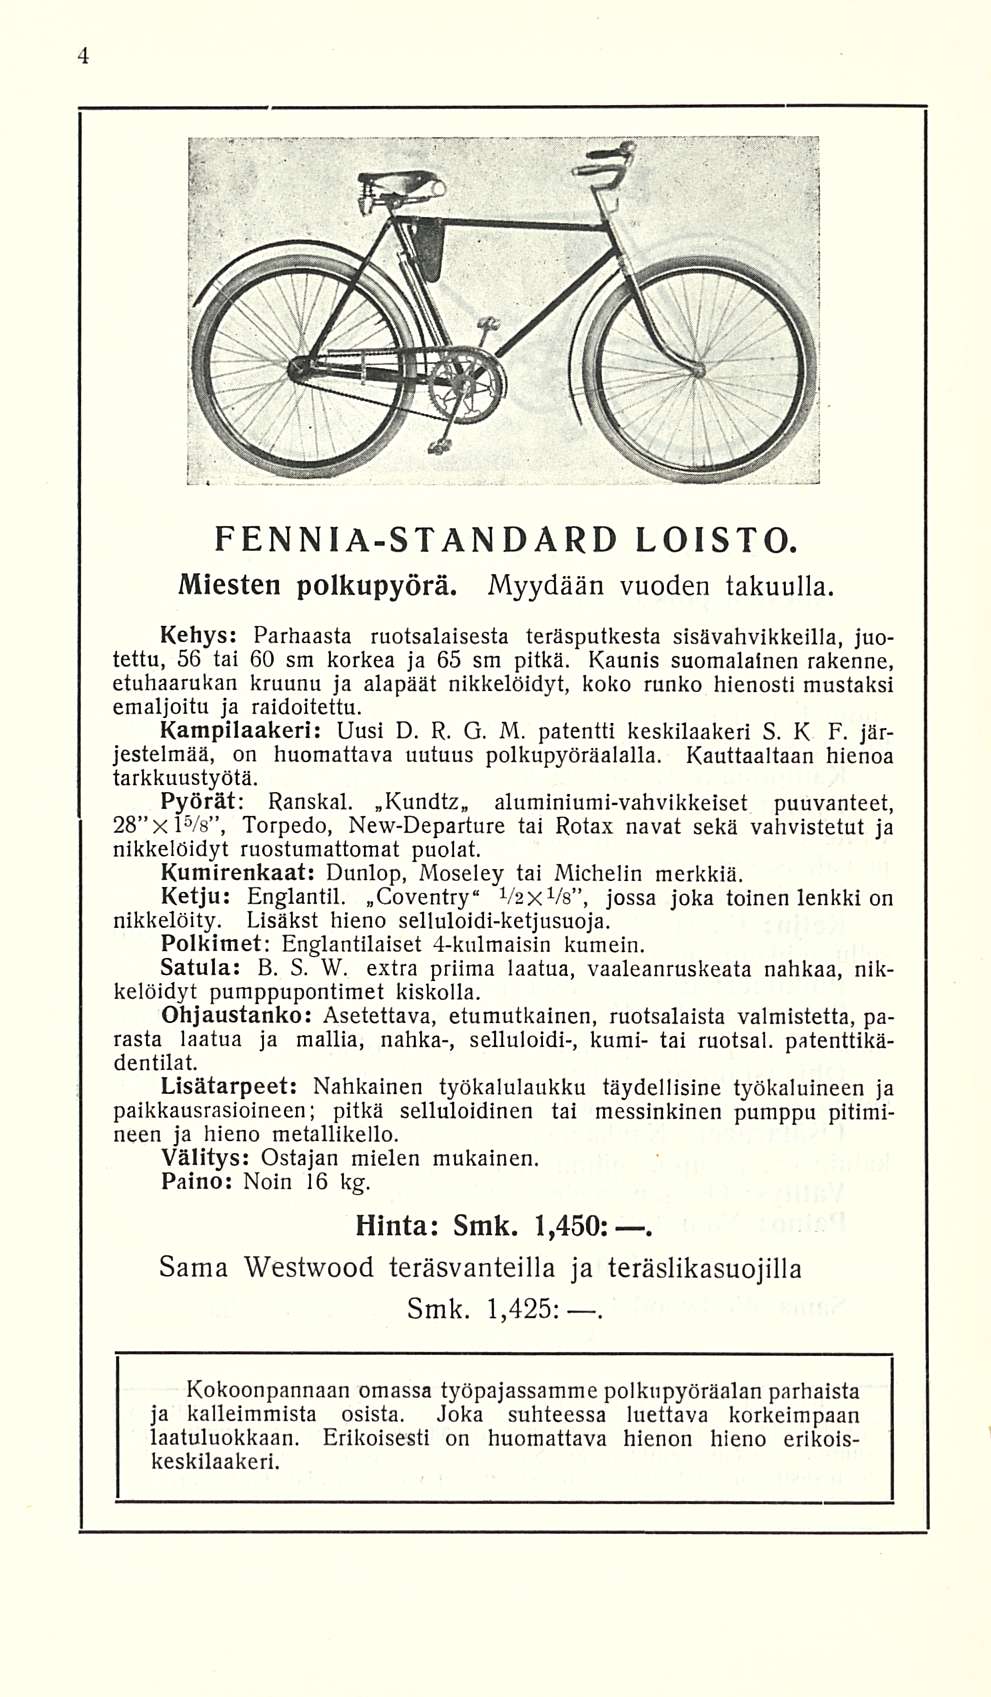 PENNIA-STANDARD LOISTO. Miesten polkupyörä. Myydään vuoden takuulla. Kehys: Parhaasta ruotsalaisesta teräsputkesta sisävahvikkeilla, juotettu, 56 tai 60 sm korkea ja 65 sm pitkä.